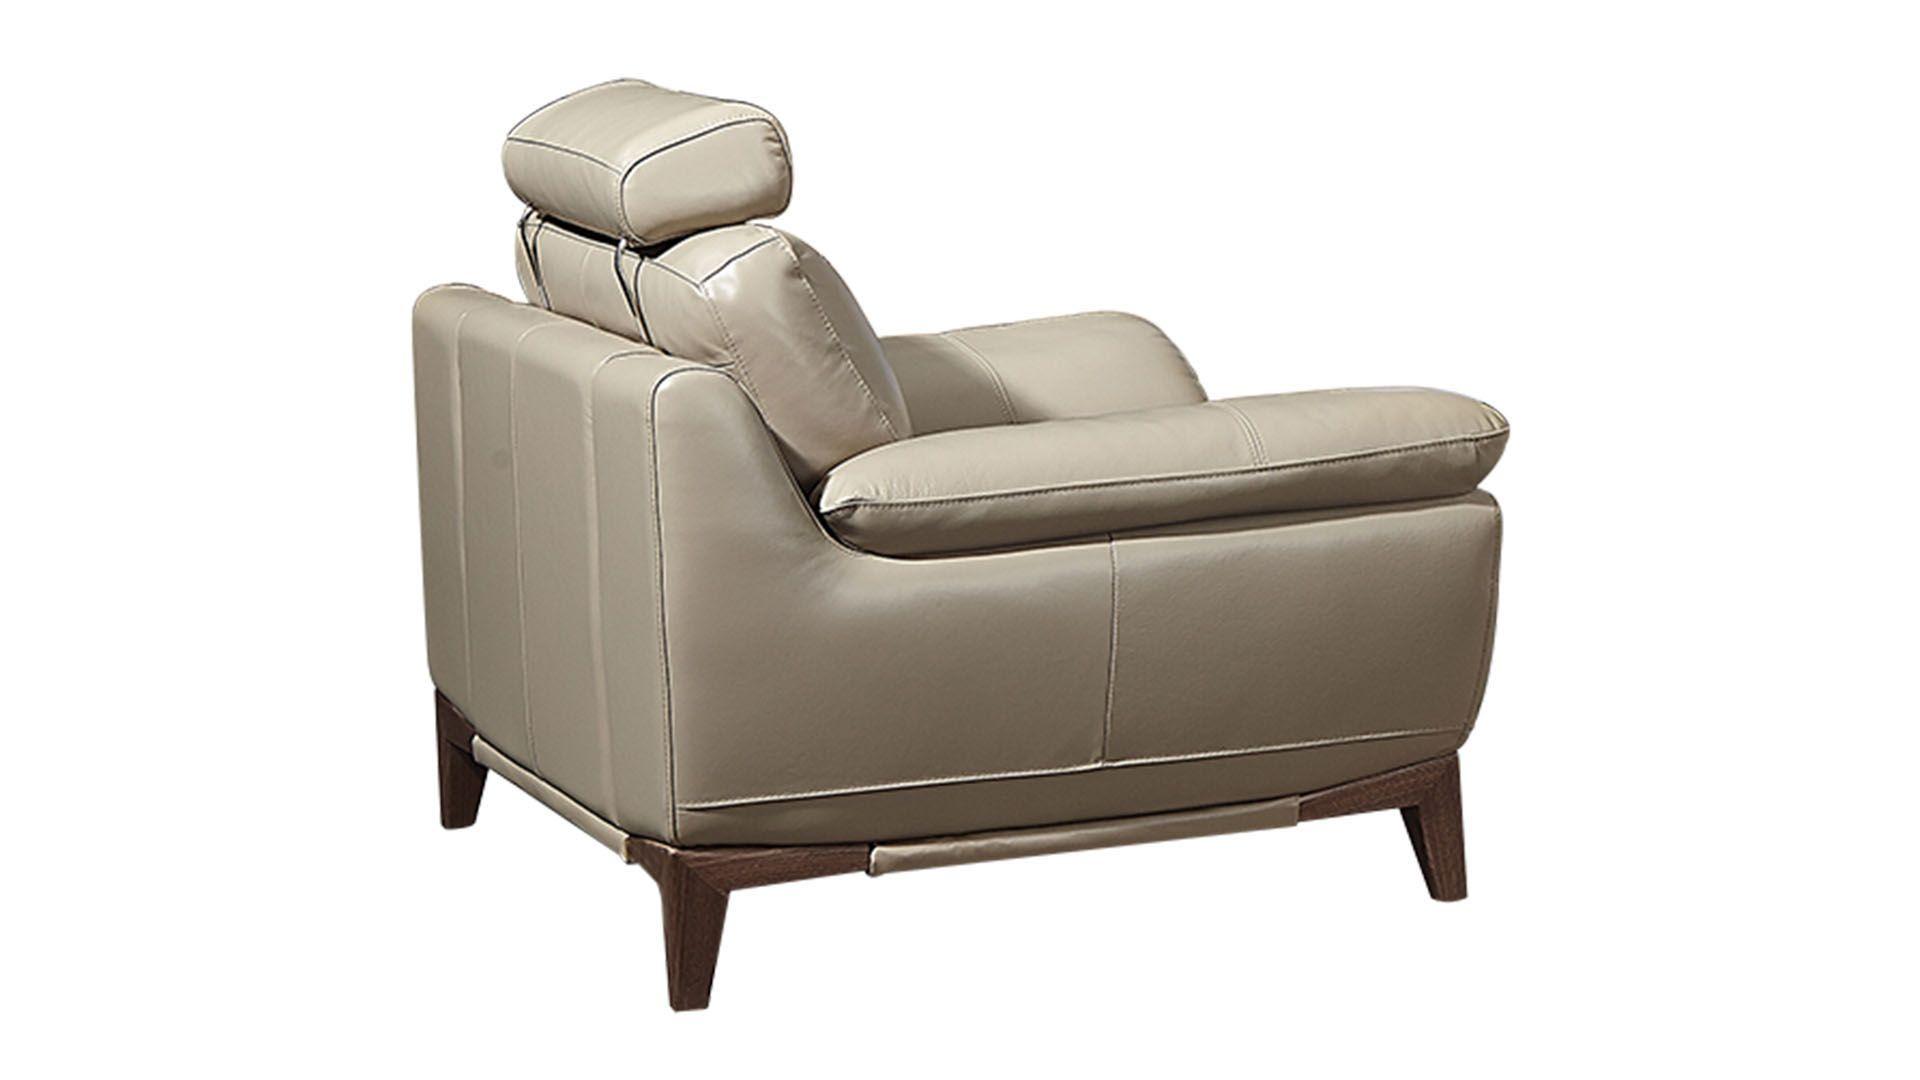 Contemporary, Modern Arm Chair EK028-TAN-CHR EK028-TAN-CHR in Tan Top grain leather